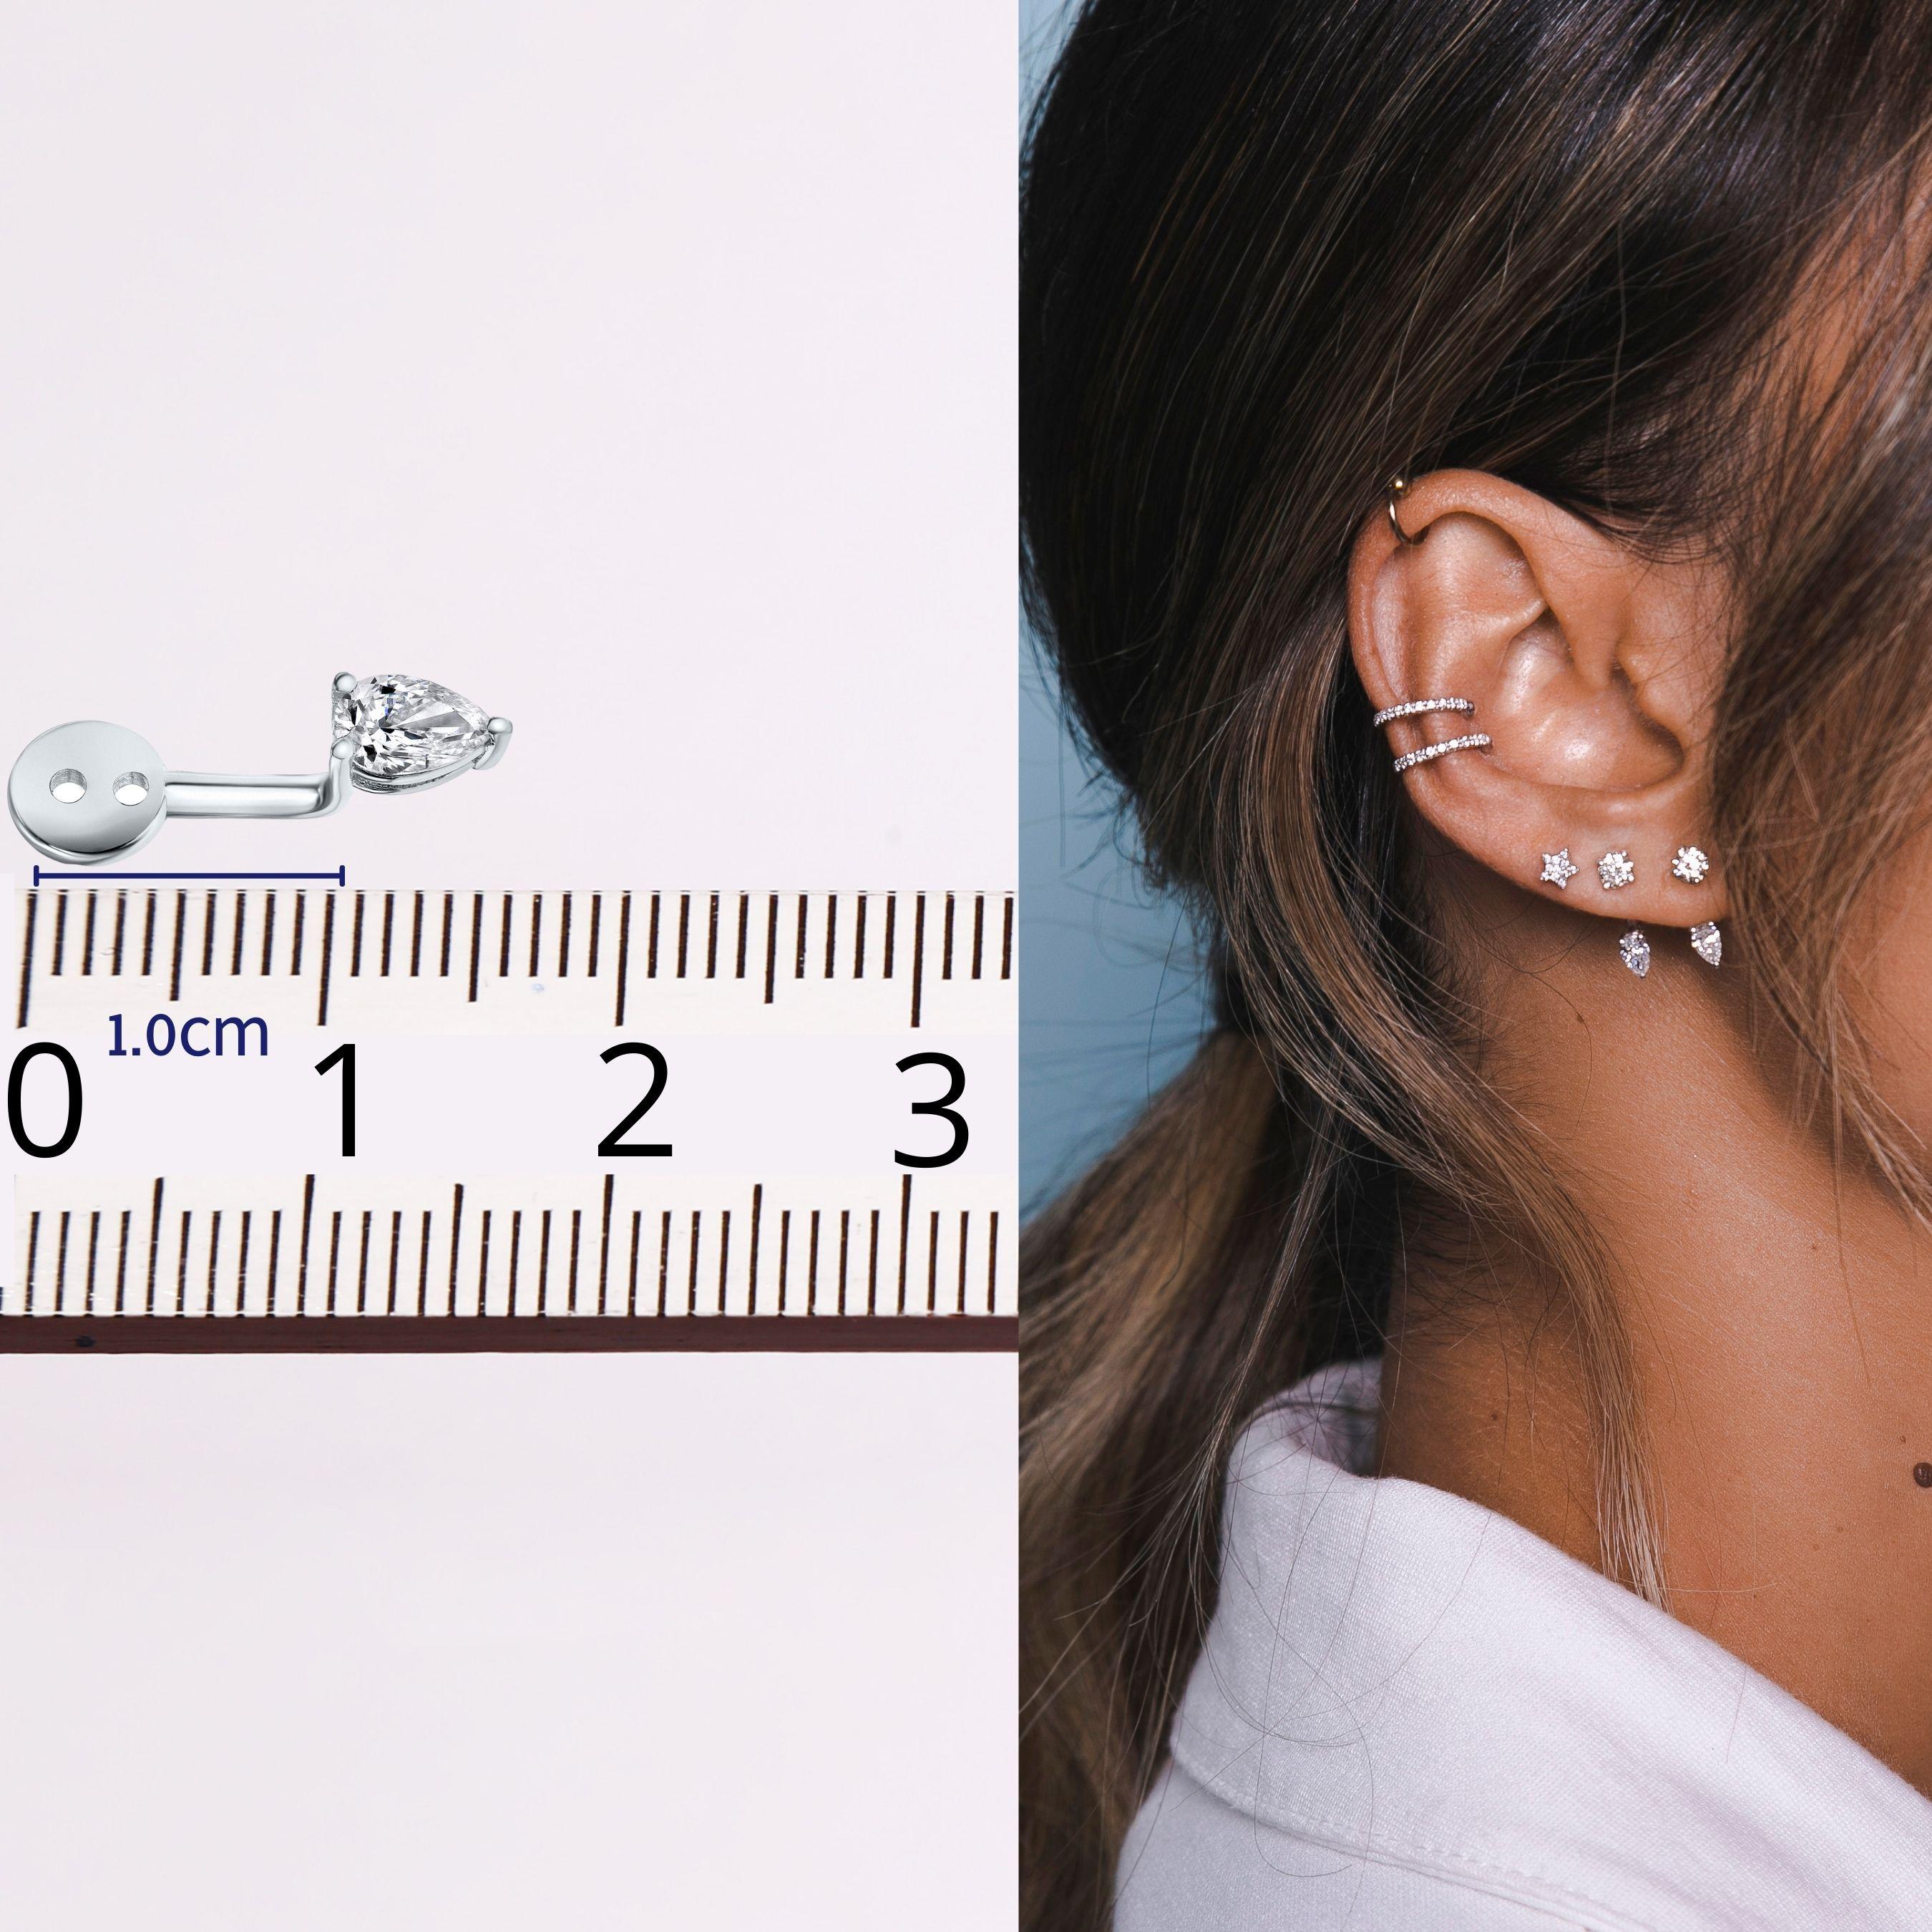 2 carat pear shaped diamond earrings